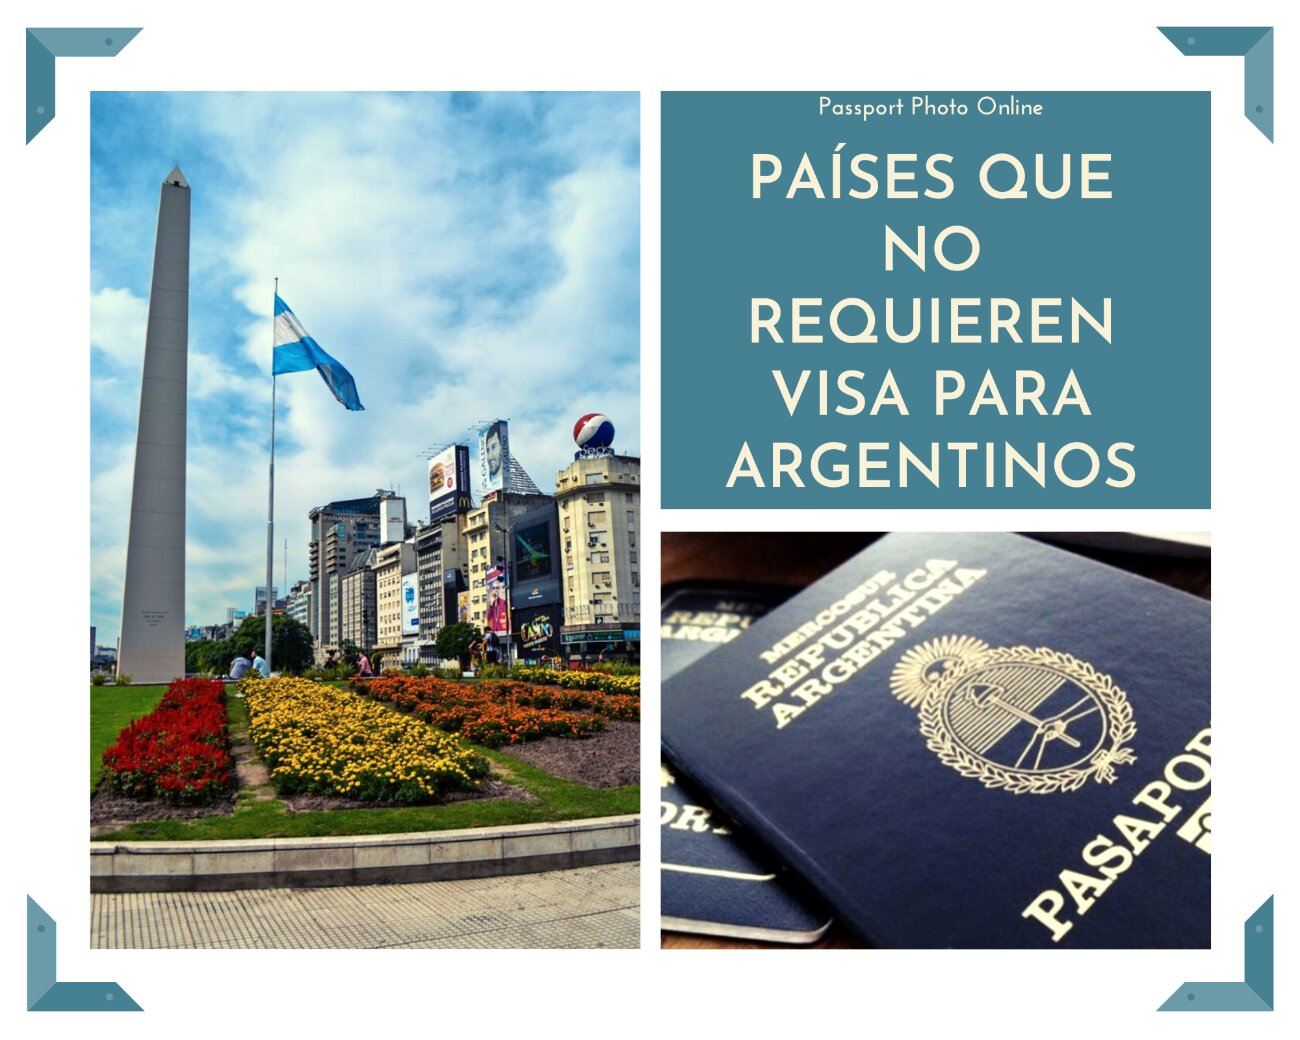 Una bandera de Argentina ondeando al viento. A la derecha, un pasaporte argentino.